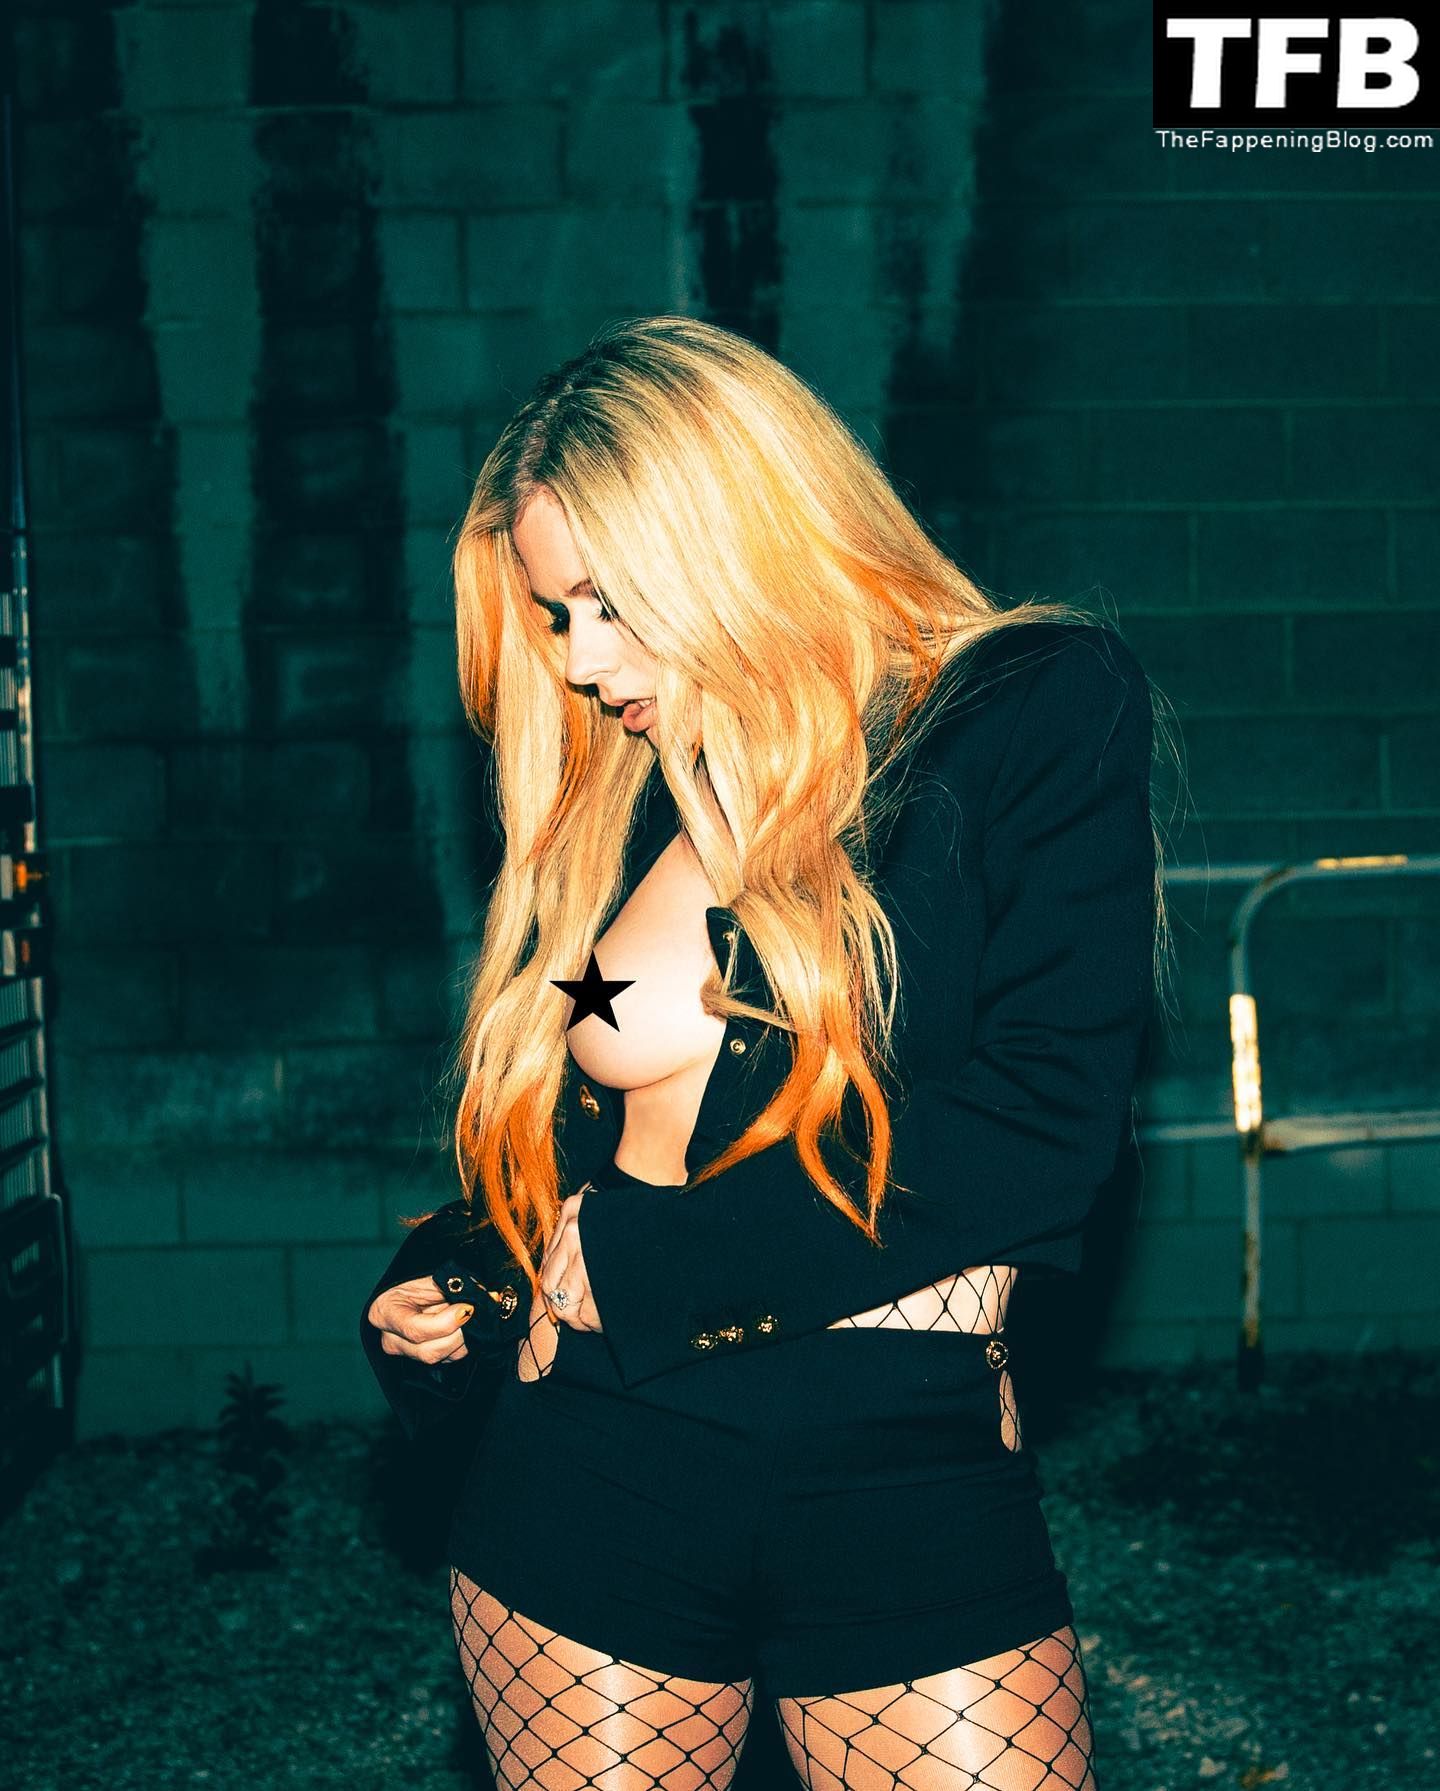 Avril-Lavigne-Braless-The-Fappening-Blog-2.jpg